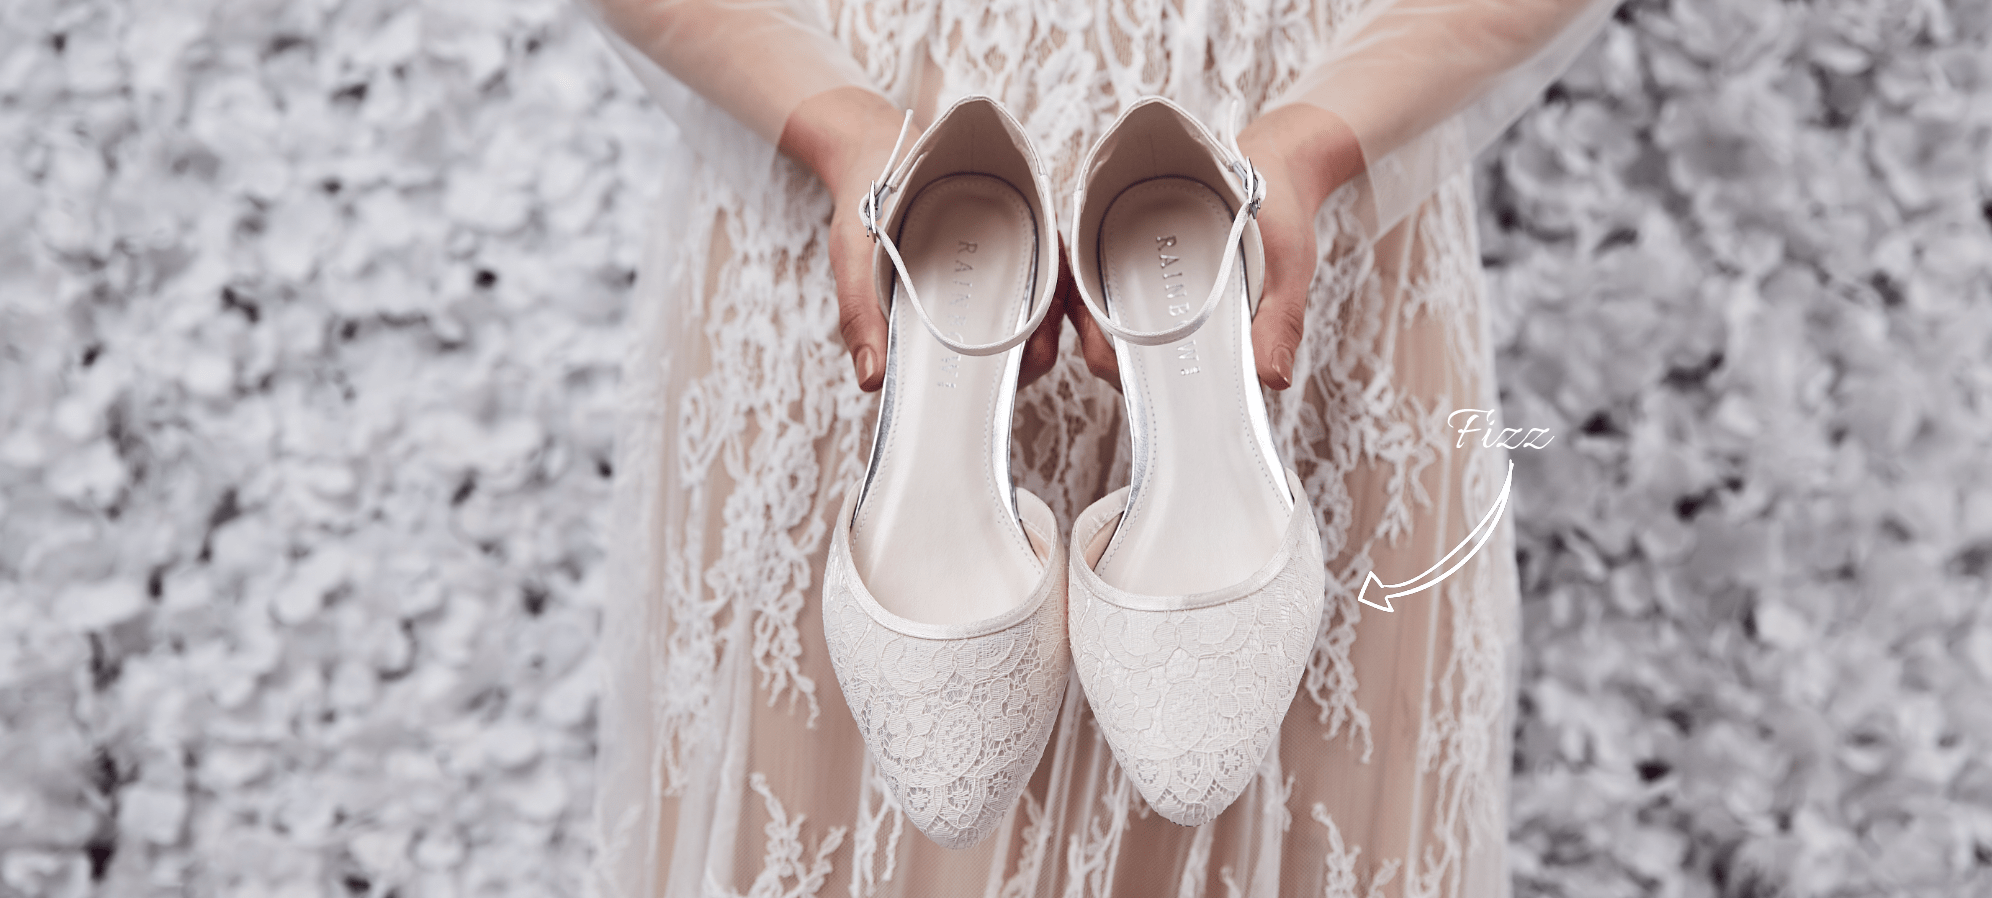 van mening zijn Leesbaarheid ophouden Ballerina Bruidsschoenen Kopen? | Elsa Trouwschoenen | ShoeStories